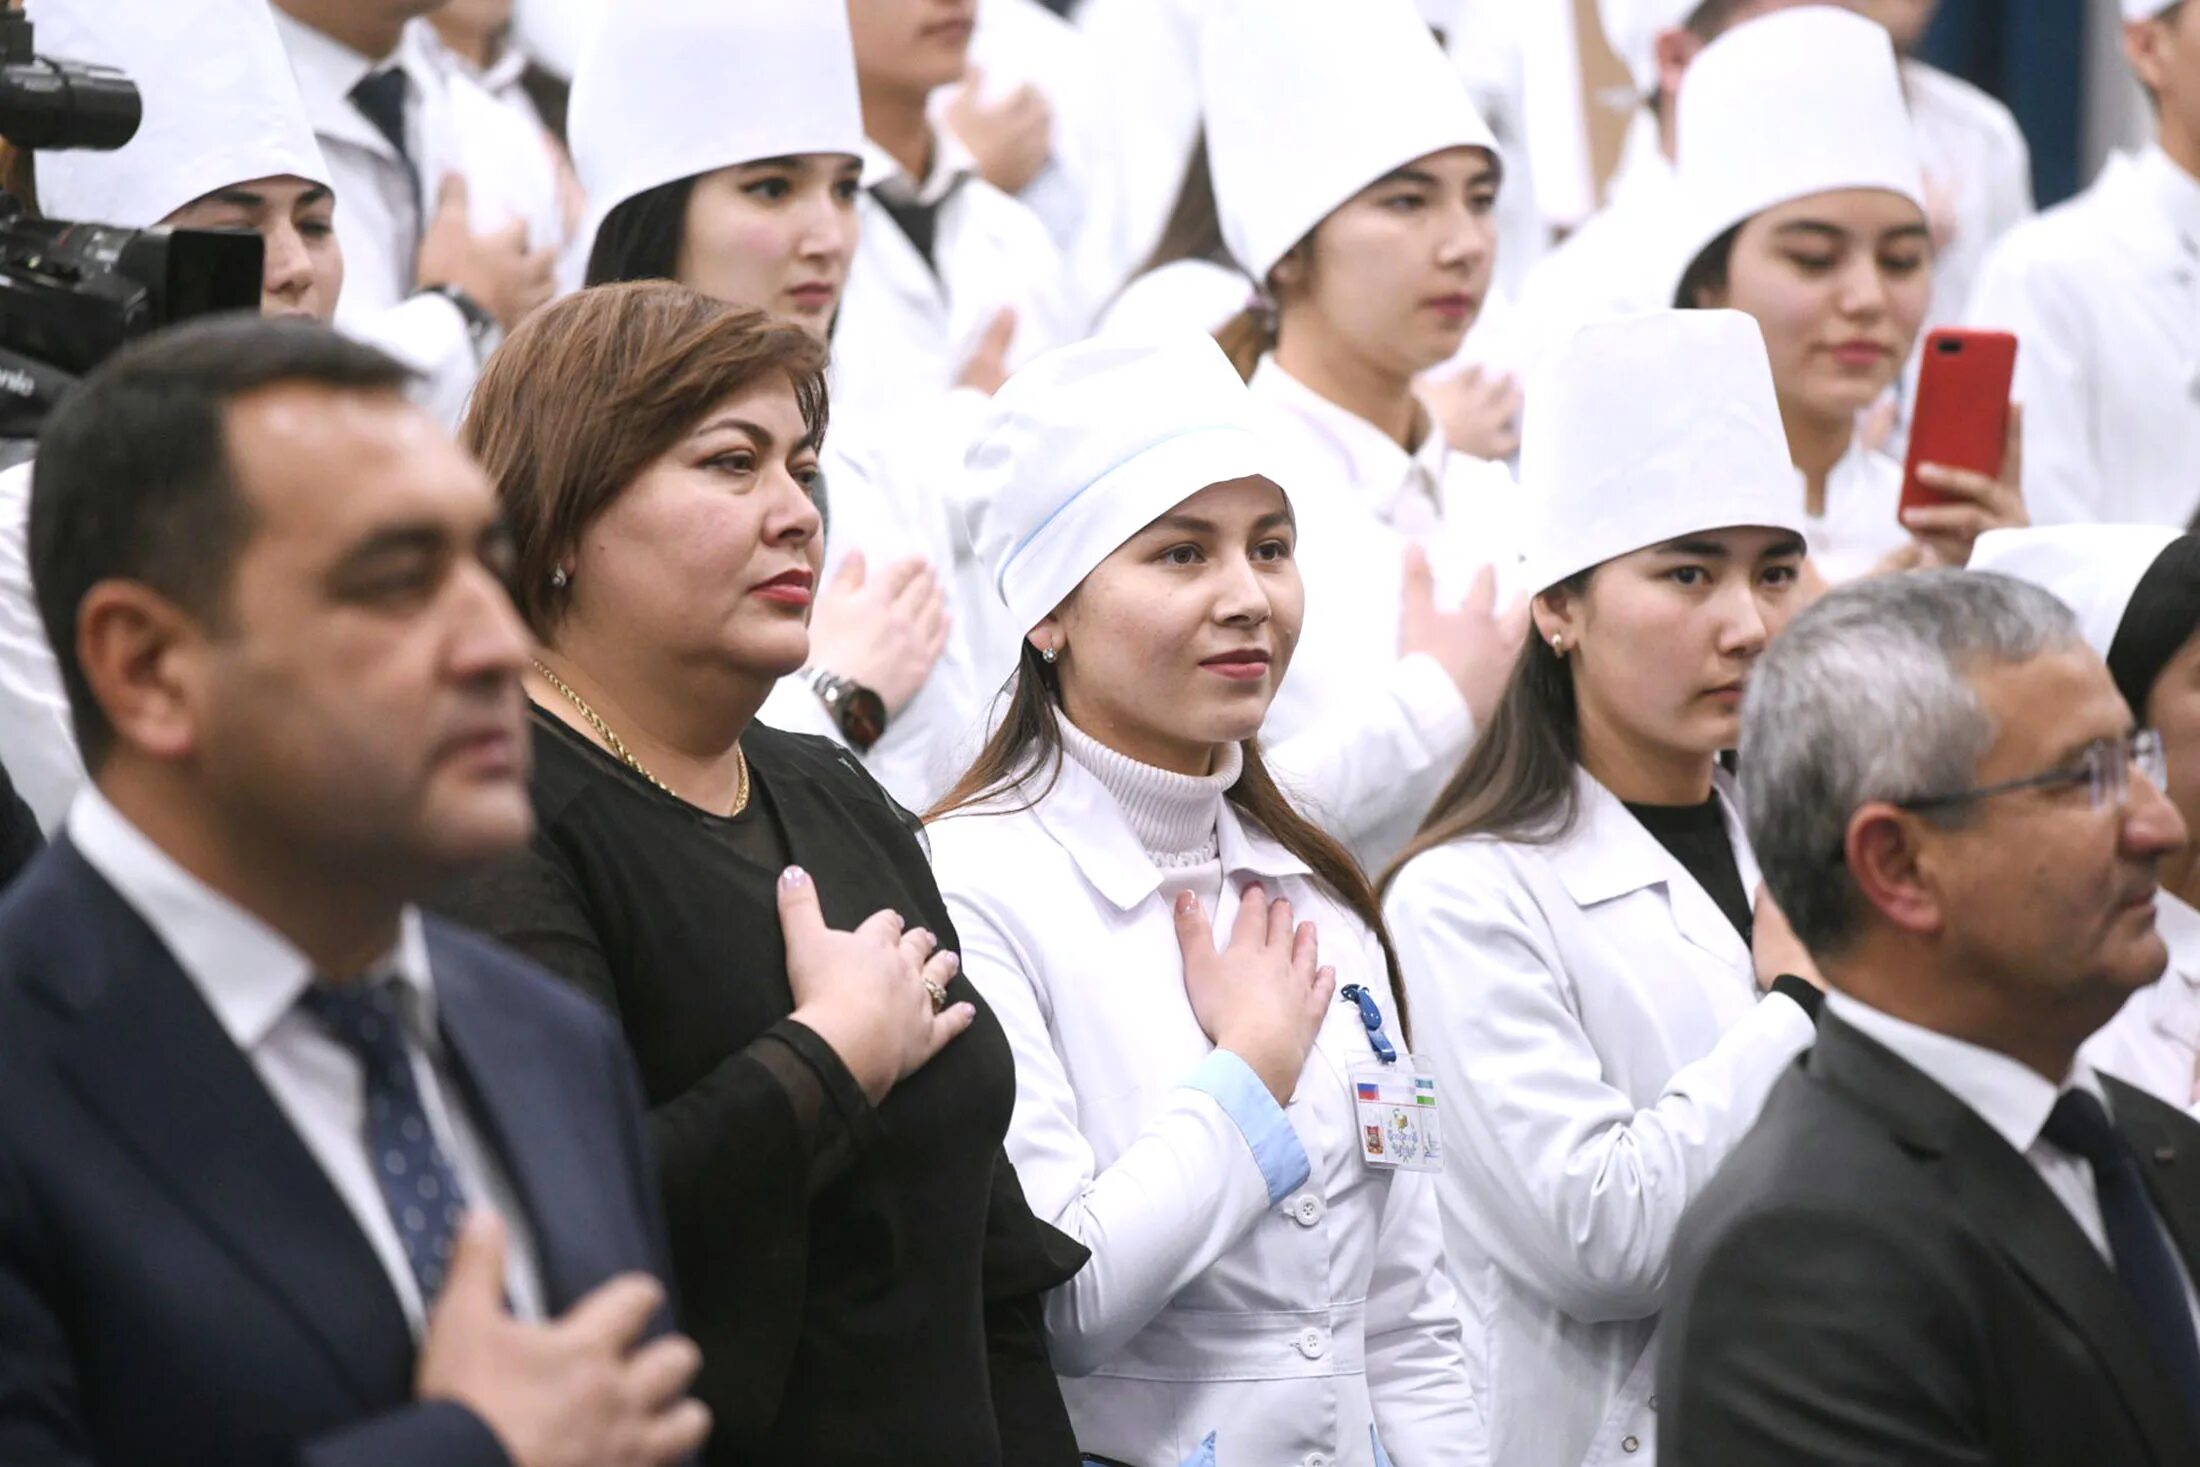 Клятва врача 10. Медики клятва Гиппократа. Врачи дают клятву. Студенты Узбекистана. Студенты-медики клятву Гиппократа.